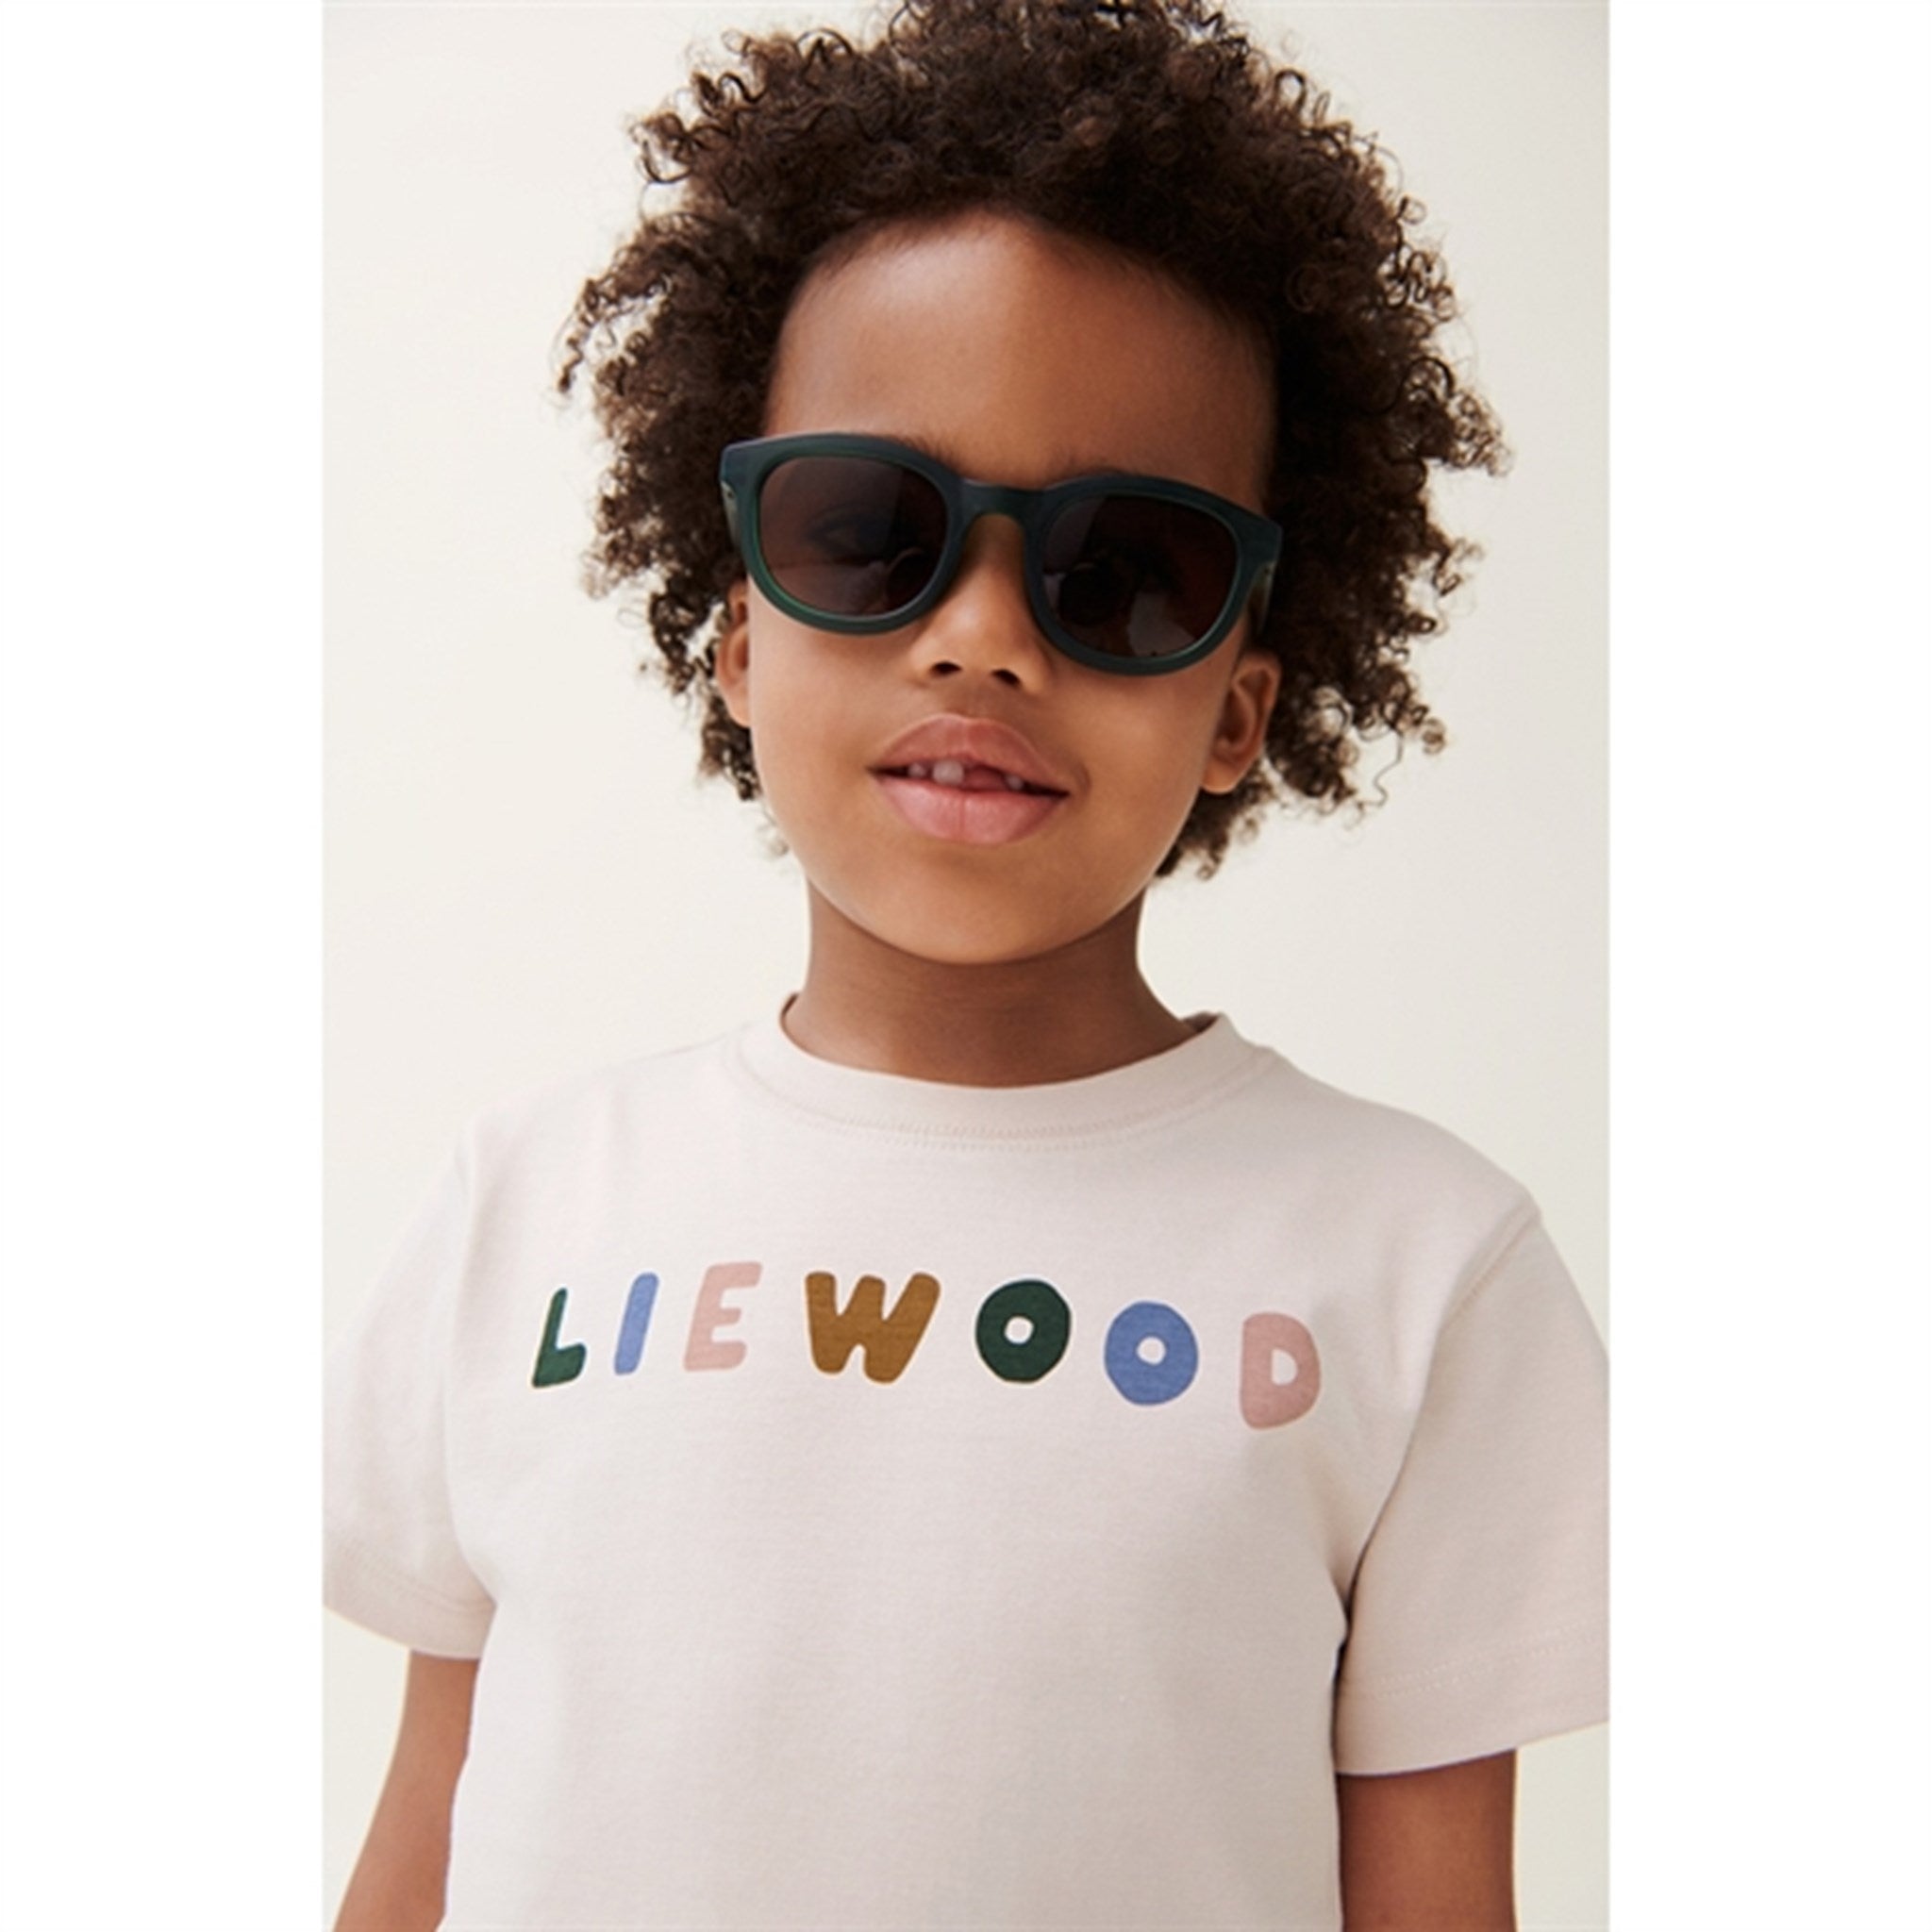 Liewood Liewood/Sandy Sixten Placement T-shirt 5